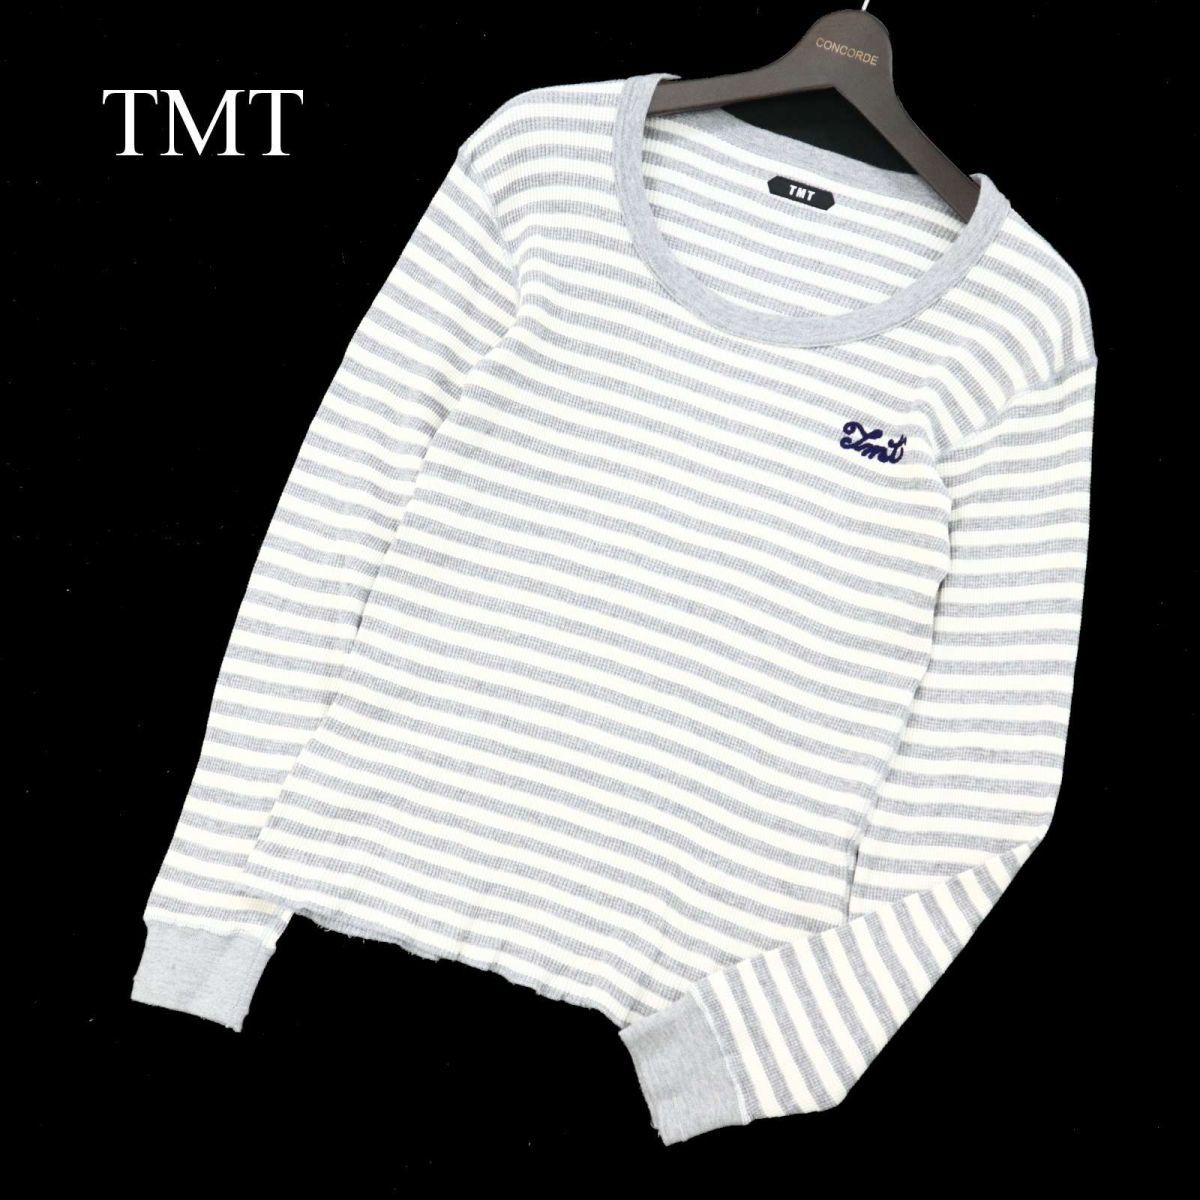 シャツにな② TMT Tシャツ。 rHIS2-m93621665750 ロンTシャツ。新品未使用。TMT サイズにな -  comunidadplanetaazul.com